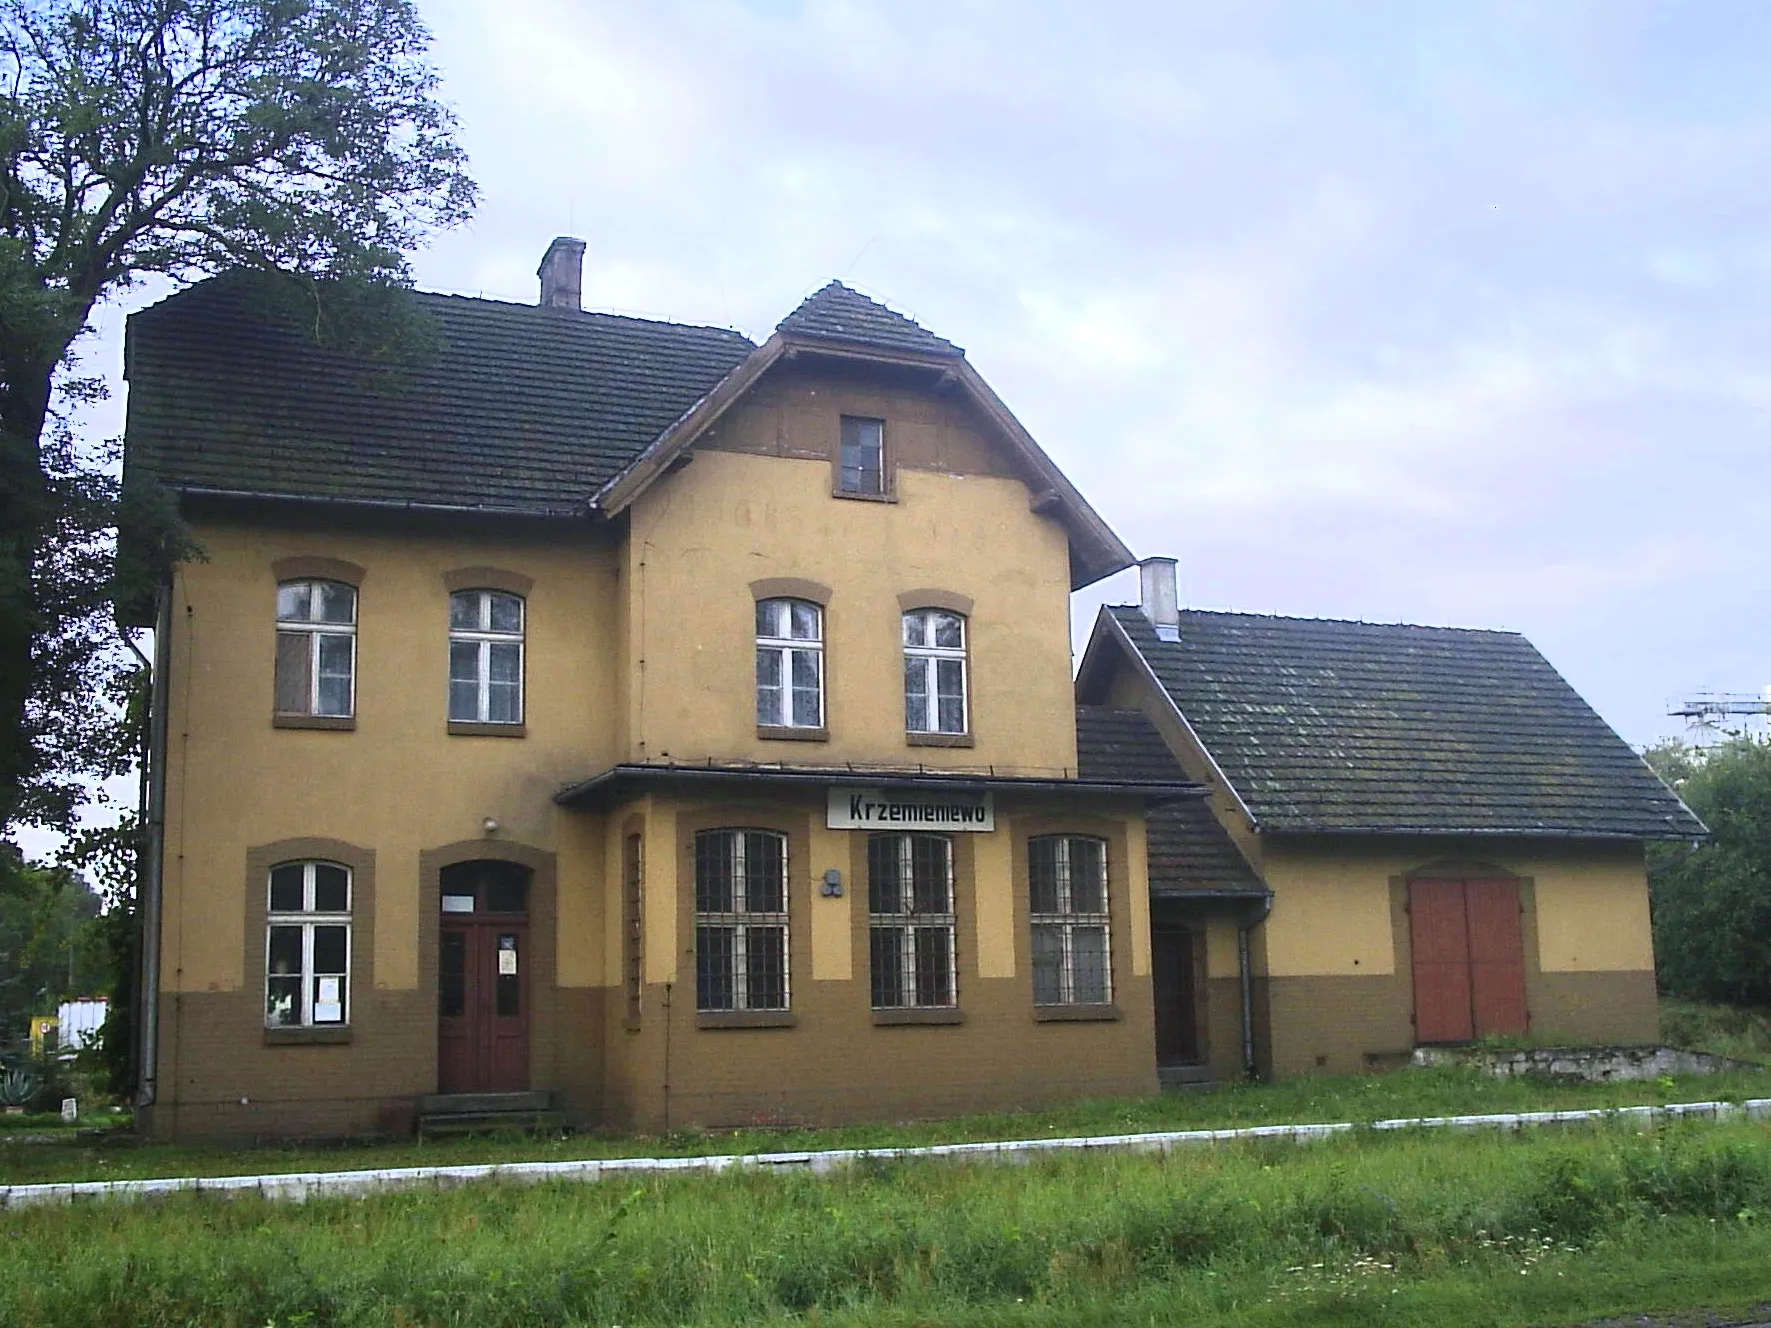 Photo showing: Train station in Krzemieniewo, Poland